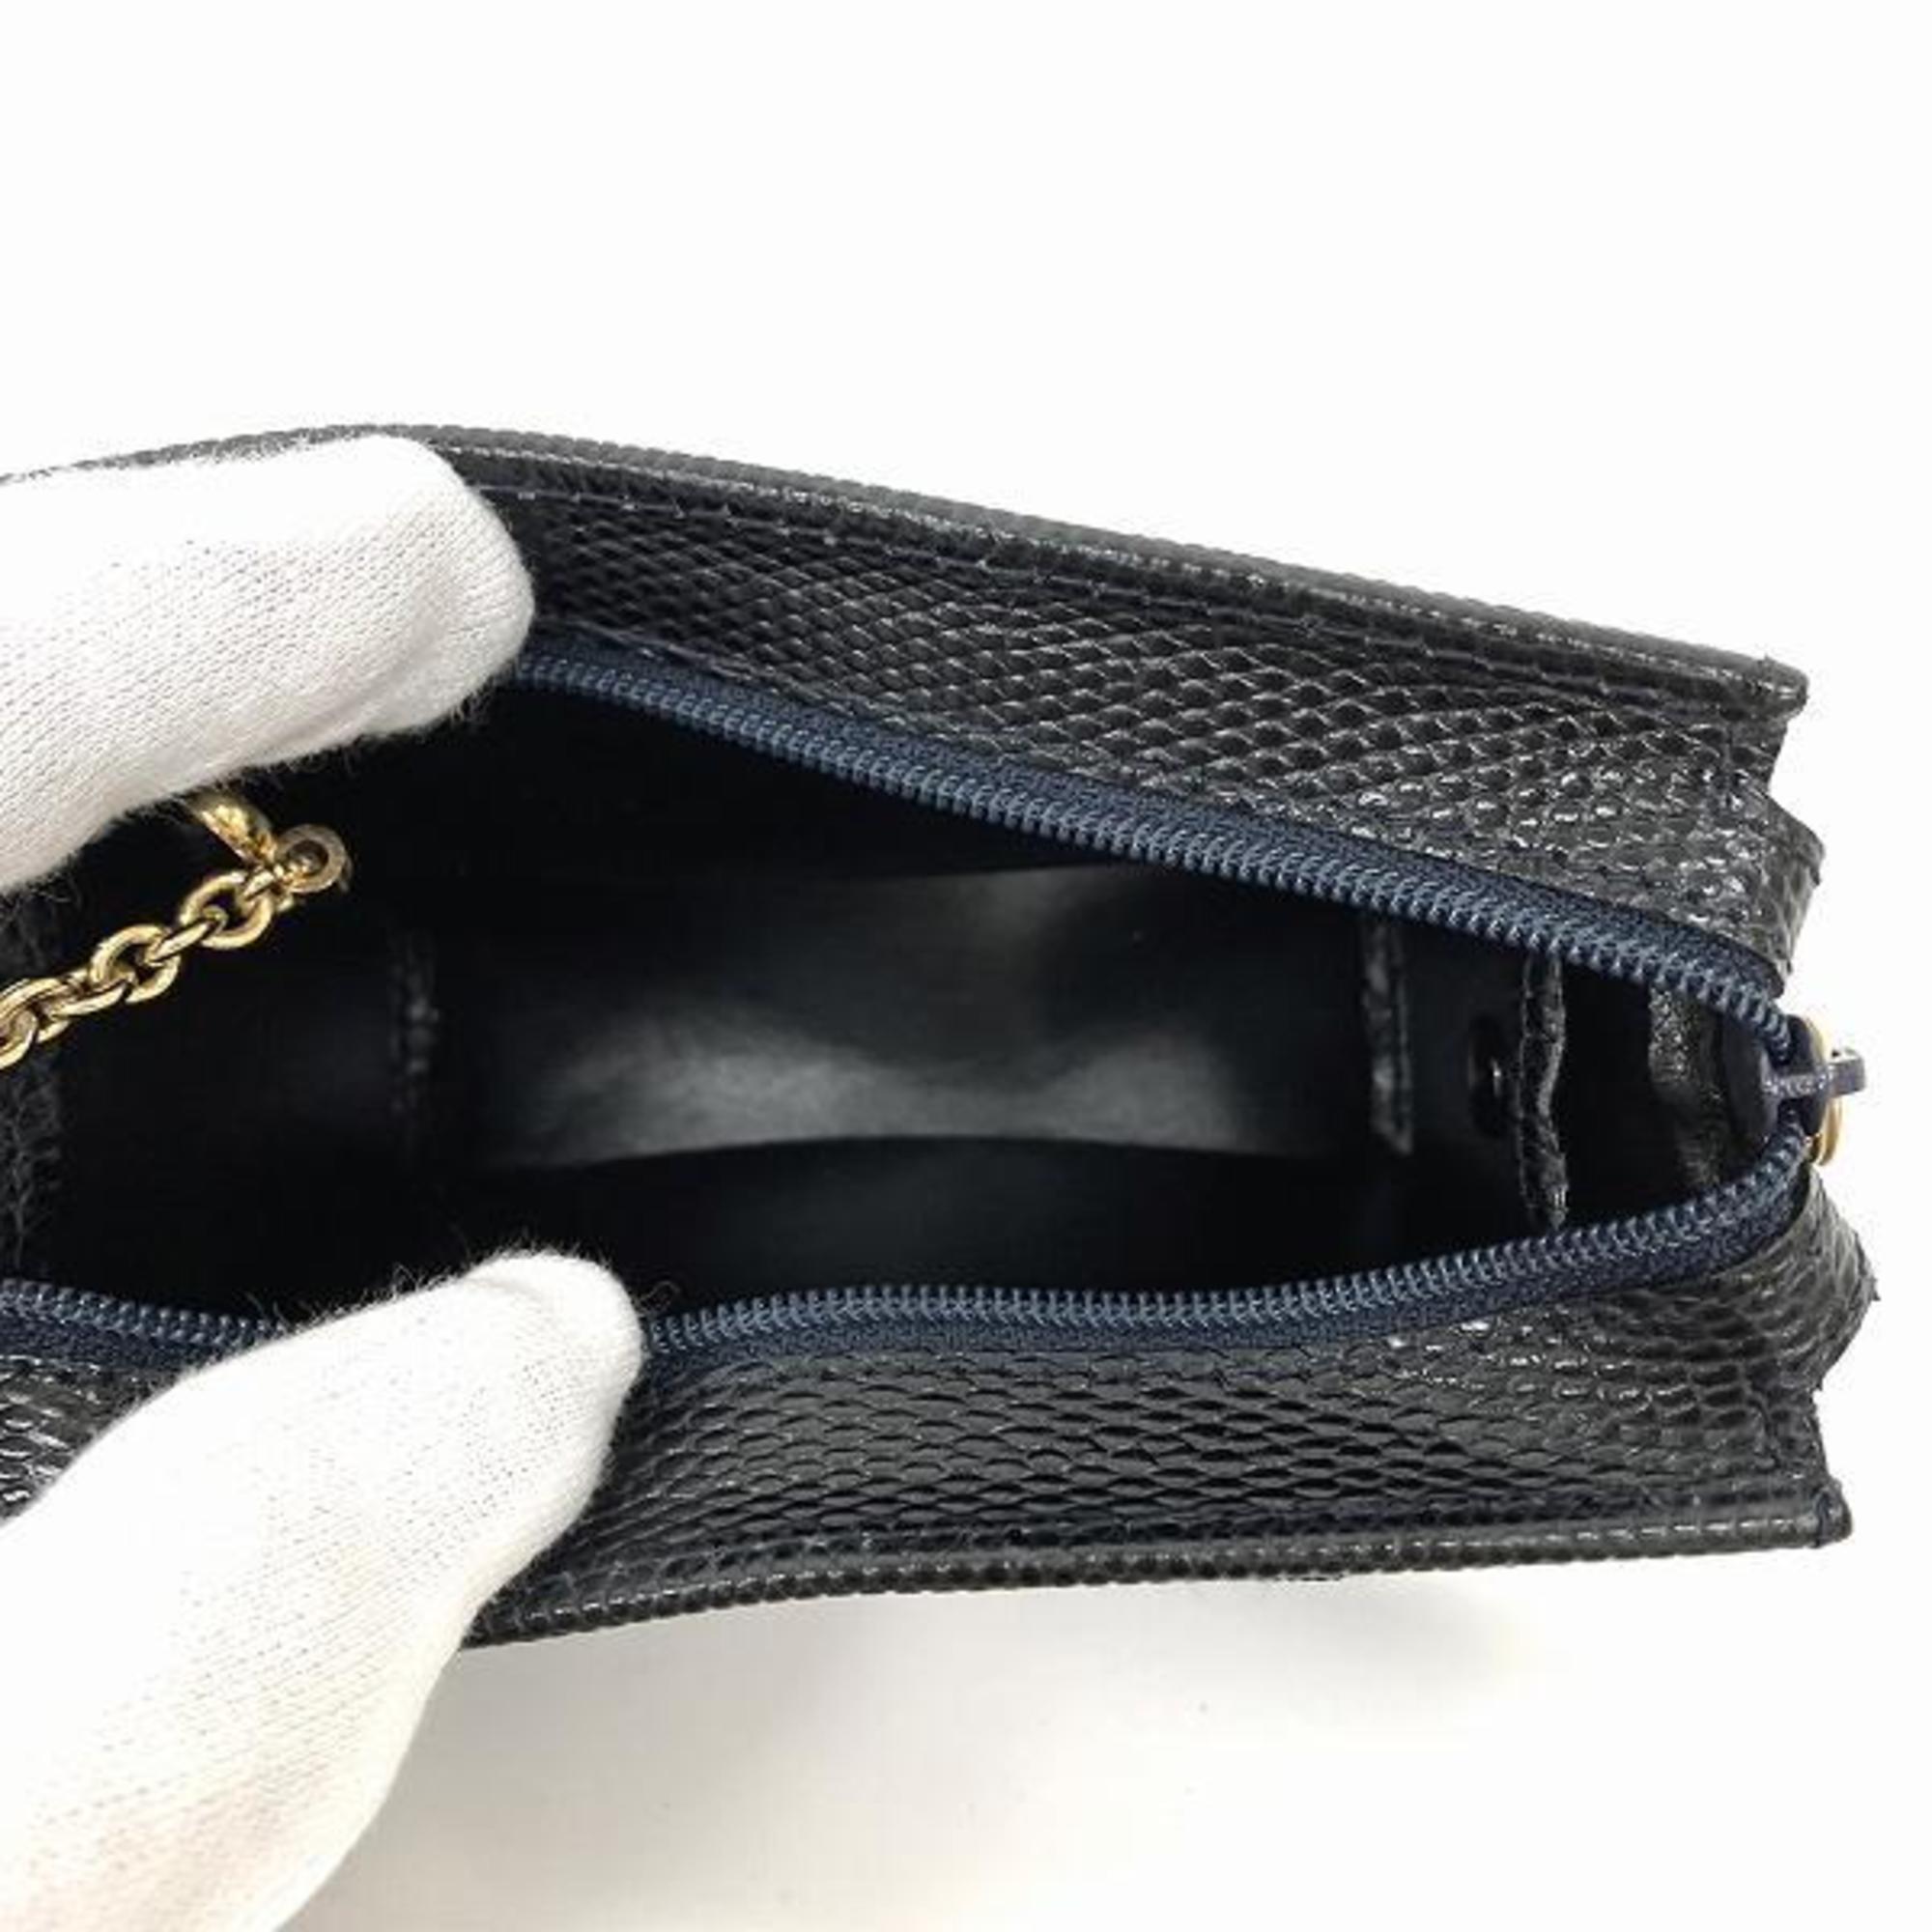 Salvatore Ferragamo Ferragamo Vara Ribbon 223057 Black Leather Accessory Pouch Women's Bag